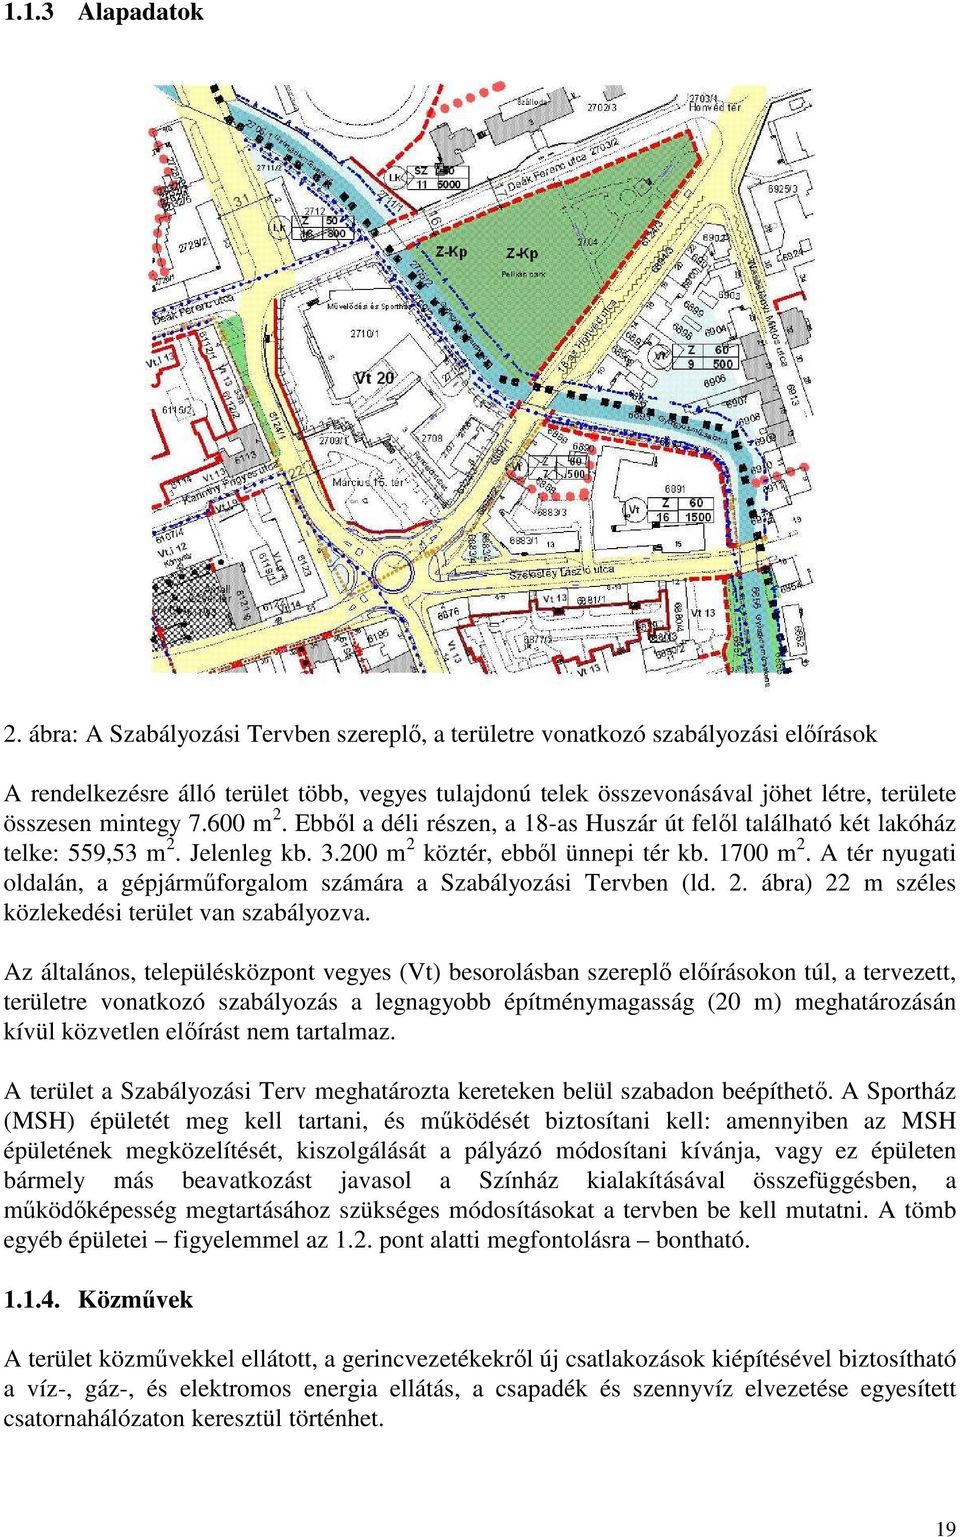 600 m 2. Ebbıl a déli részen, a 18-as Huszár út felıl található két lakóház telke: 559,53 m 2. Jelenleg kb. 3.200 m 2 köztér, ebbıl ünnepi tér kb. 1700 m 2.